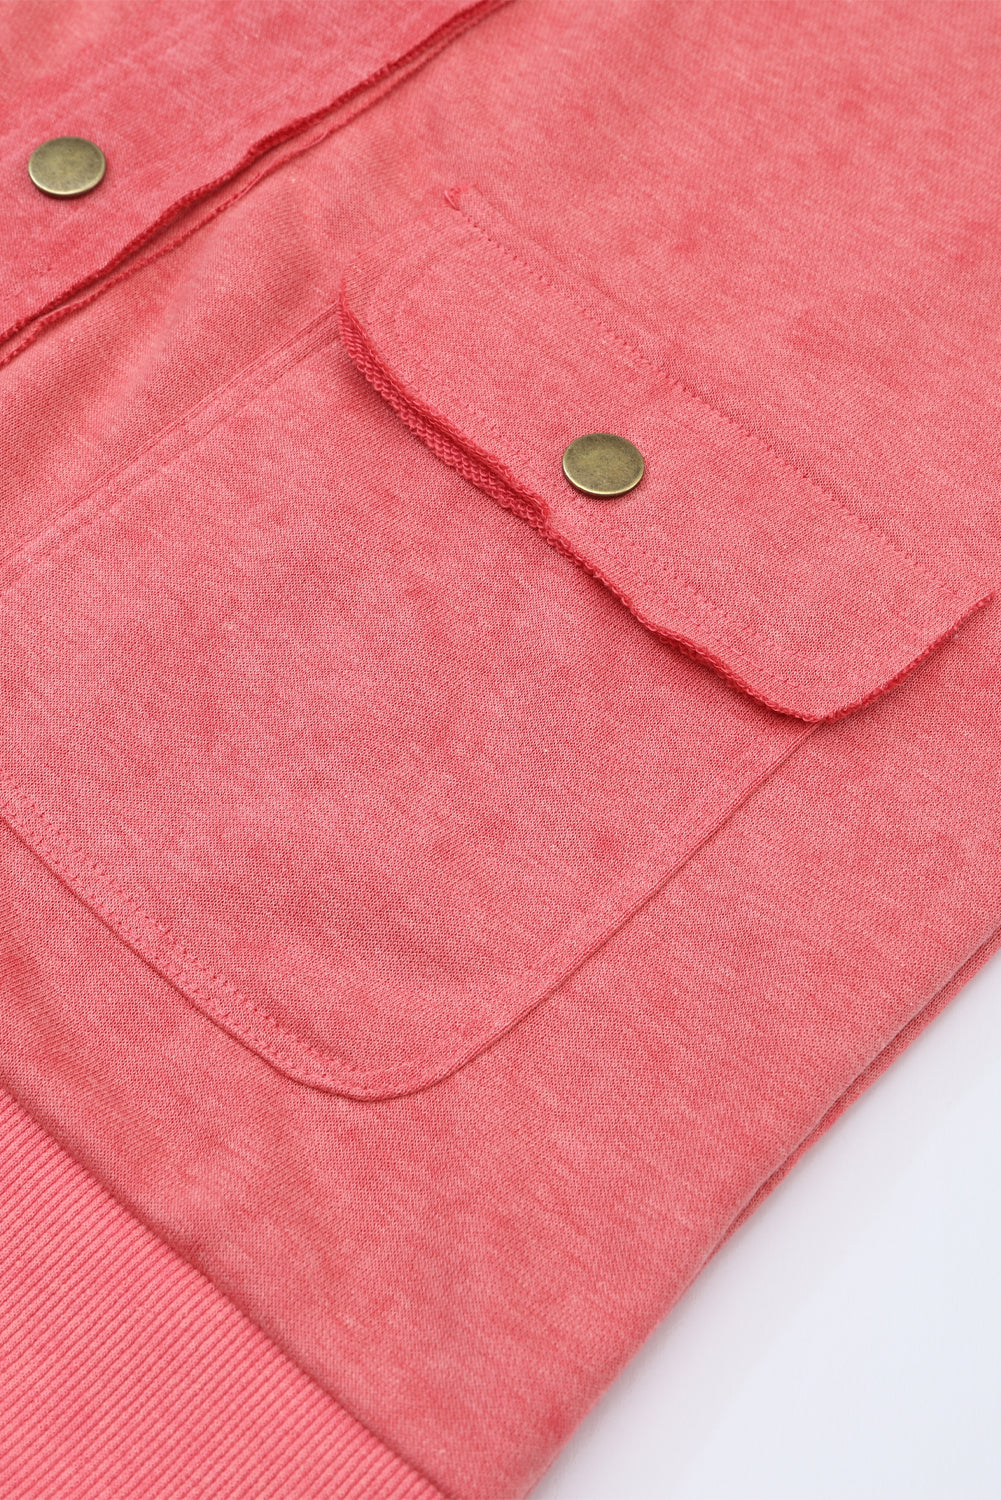 Feurige rote Vintage-Hemdjacke mit verwaschener Pattentasche und Knöpfen